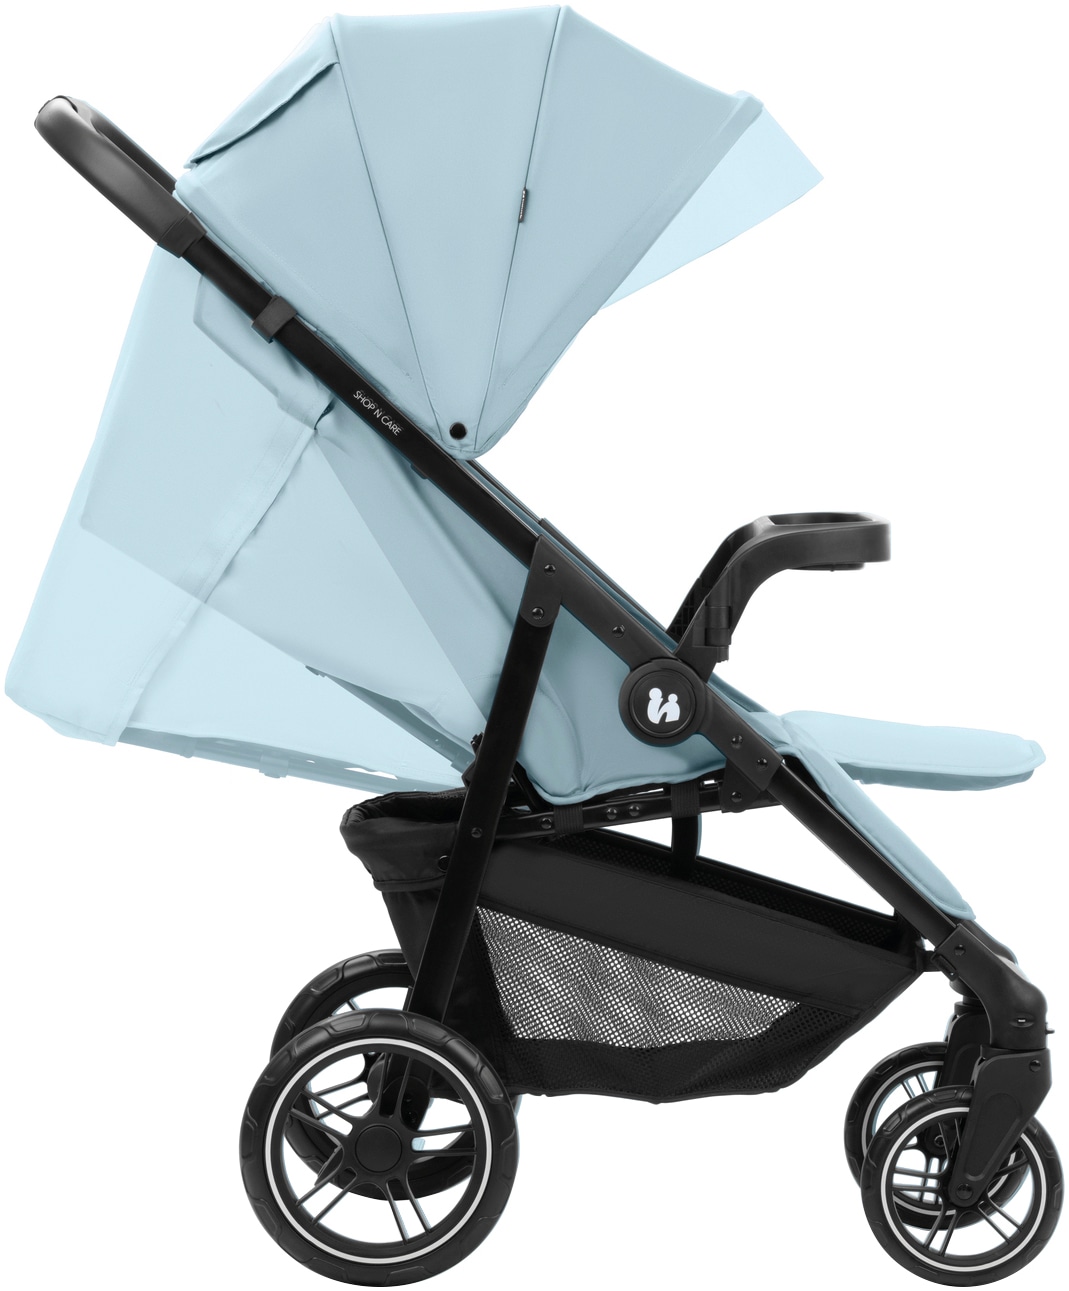 Hauck Kinder-Buggy »Shop N Care, Dusty Blue«, 22 kg, bis 22 kg belastbar; kompatibel mit Babyschale